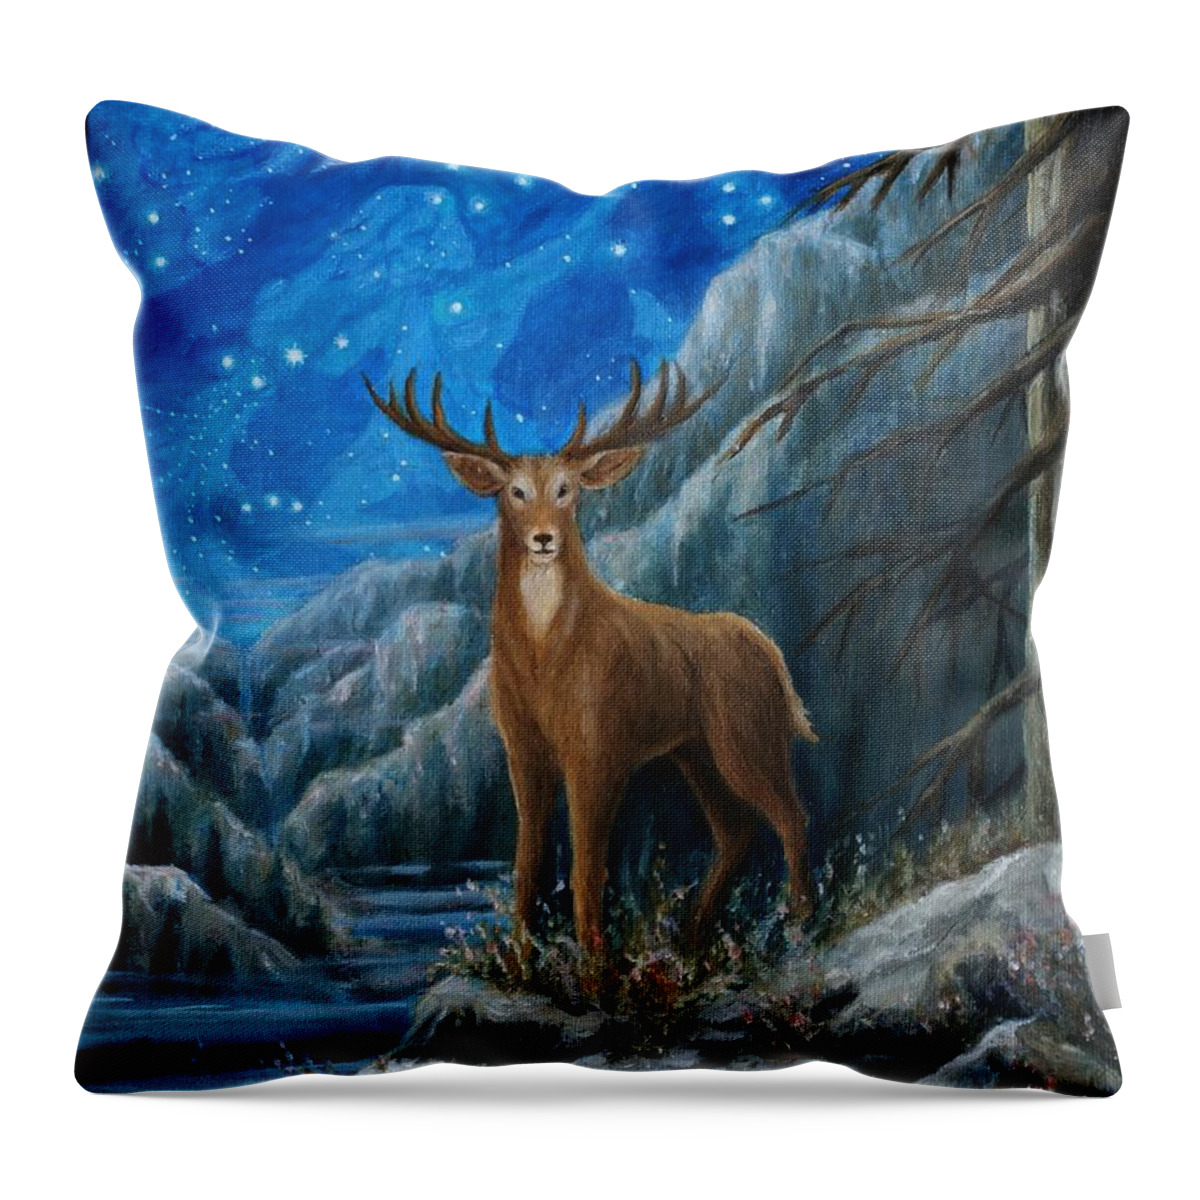 Deer Throw Pillow featuring the painting the Hart by Matt Konar